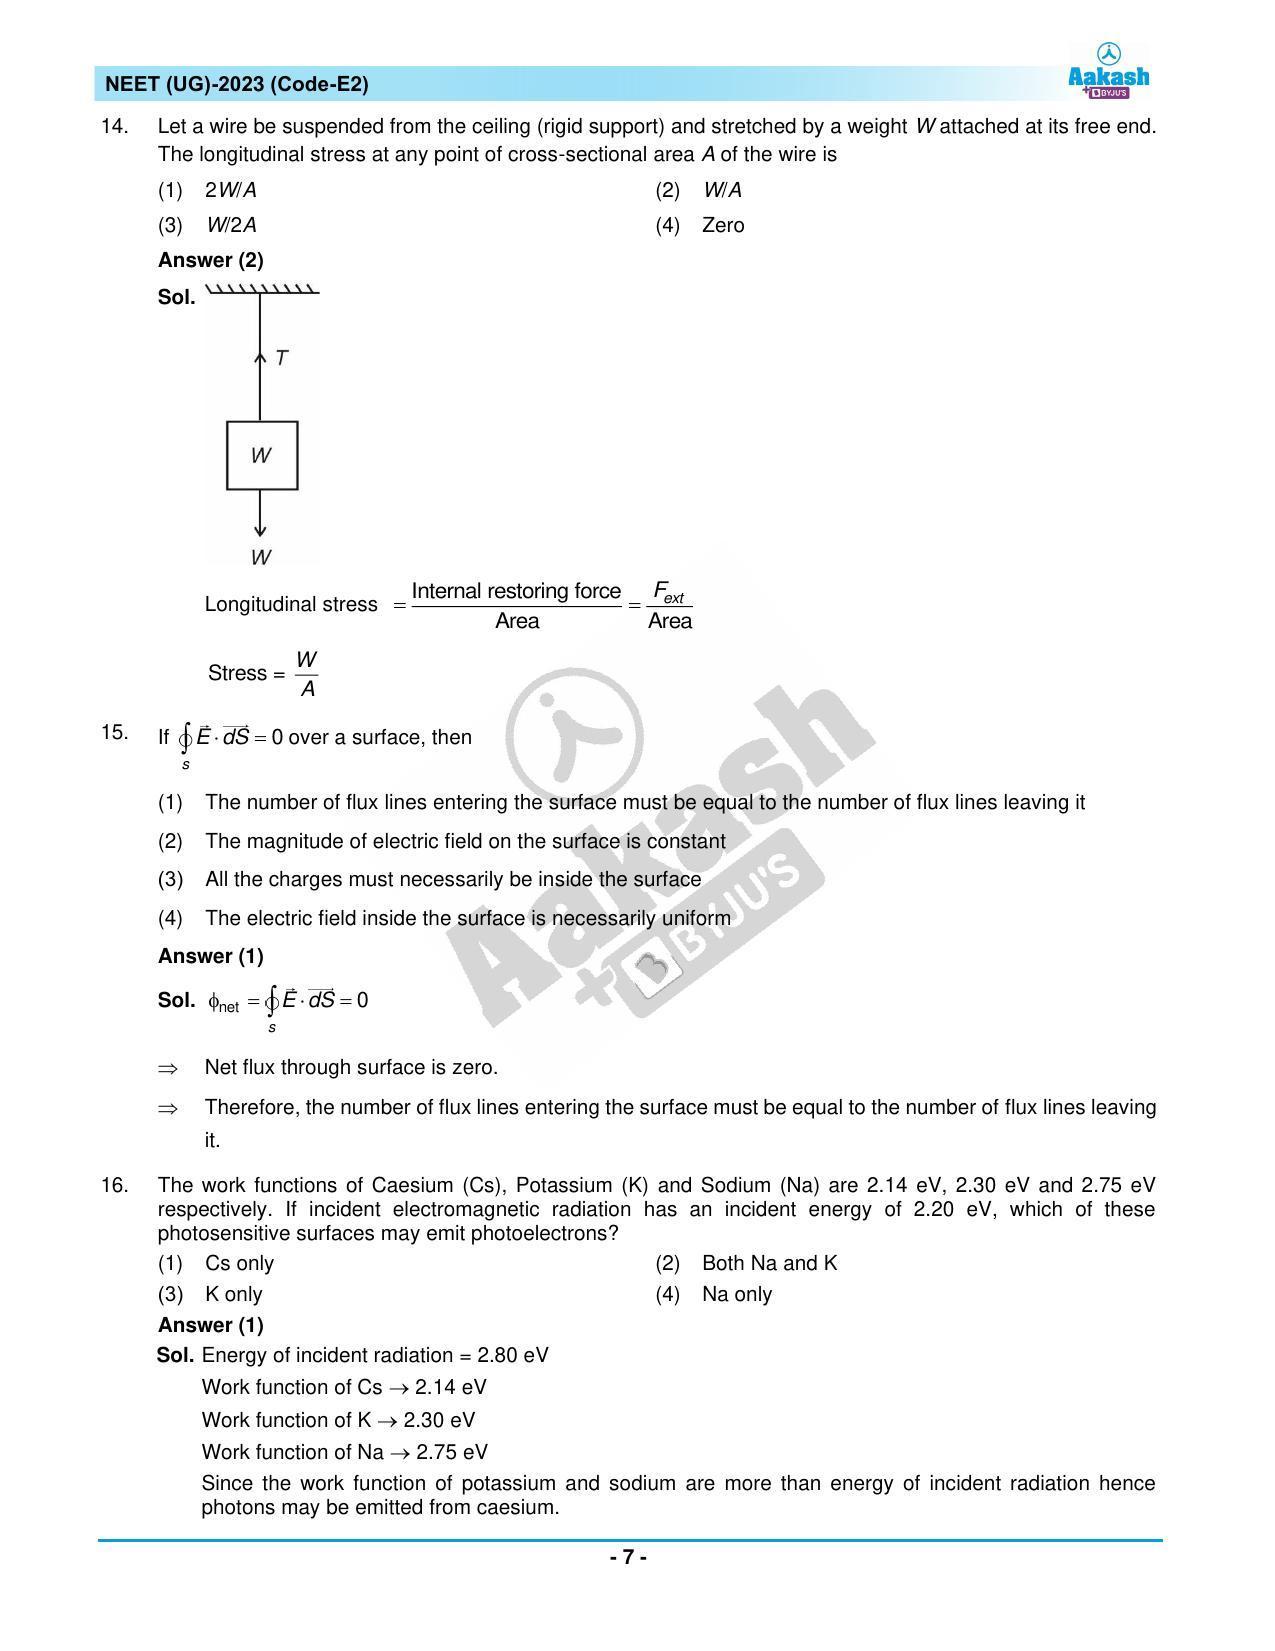 NEET 2023 Question Paper E2 - Page 7